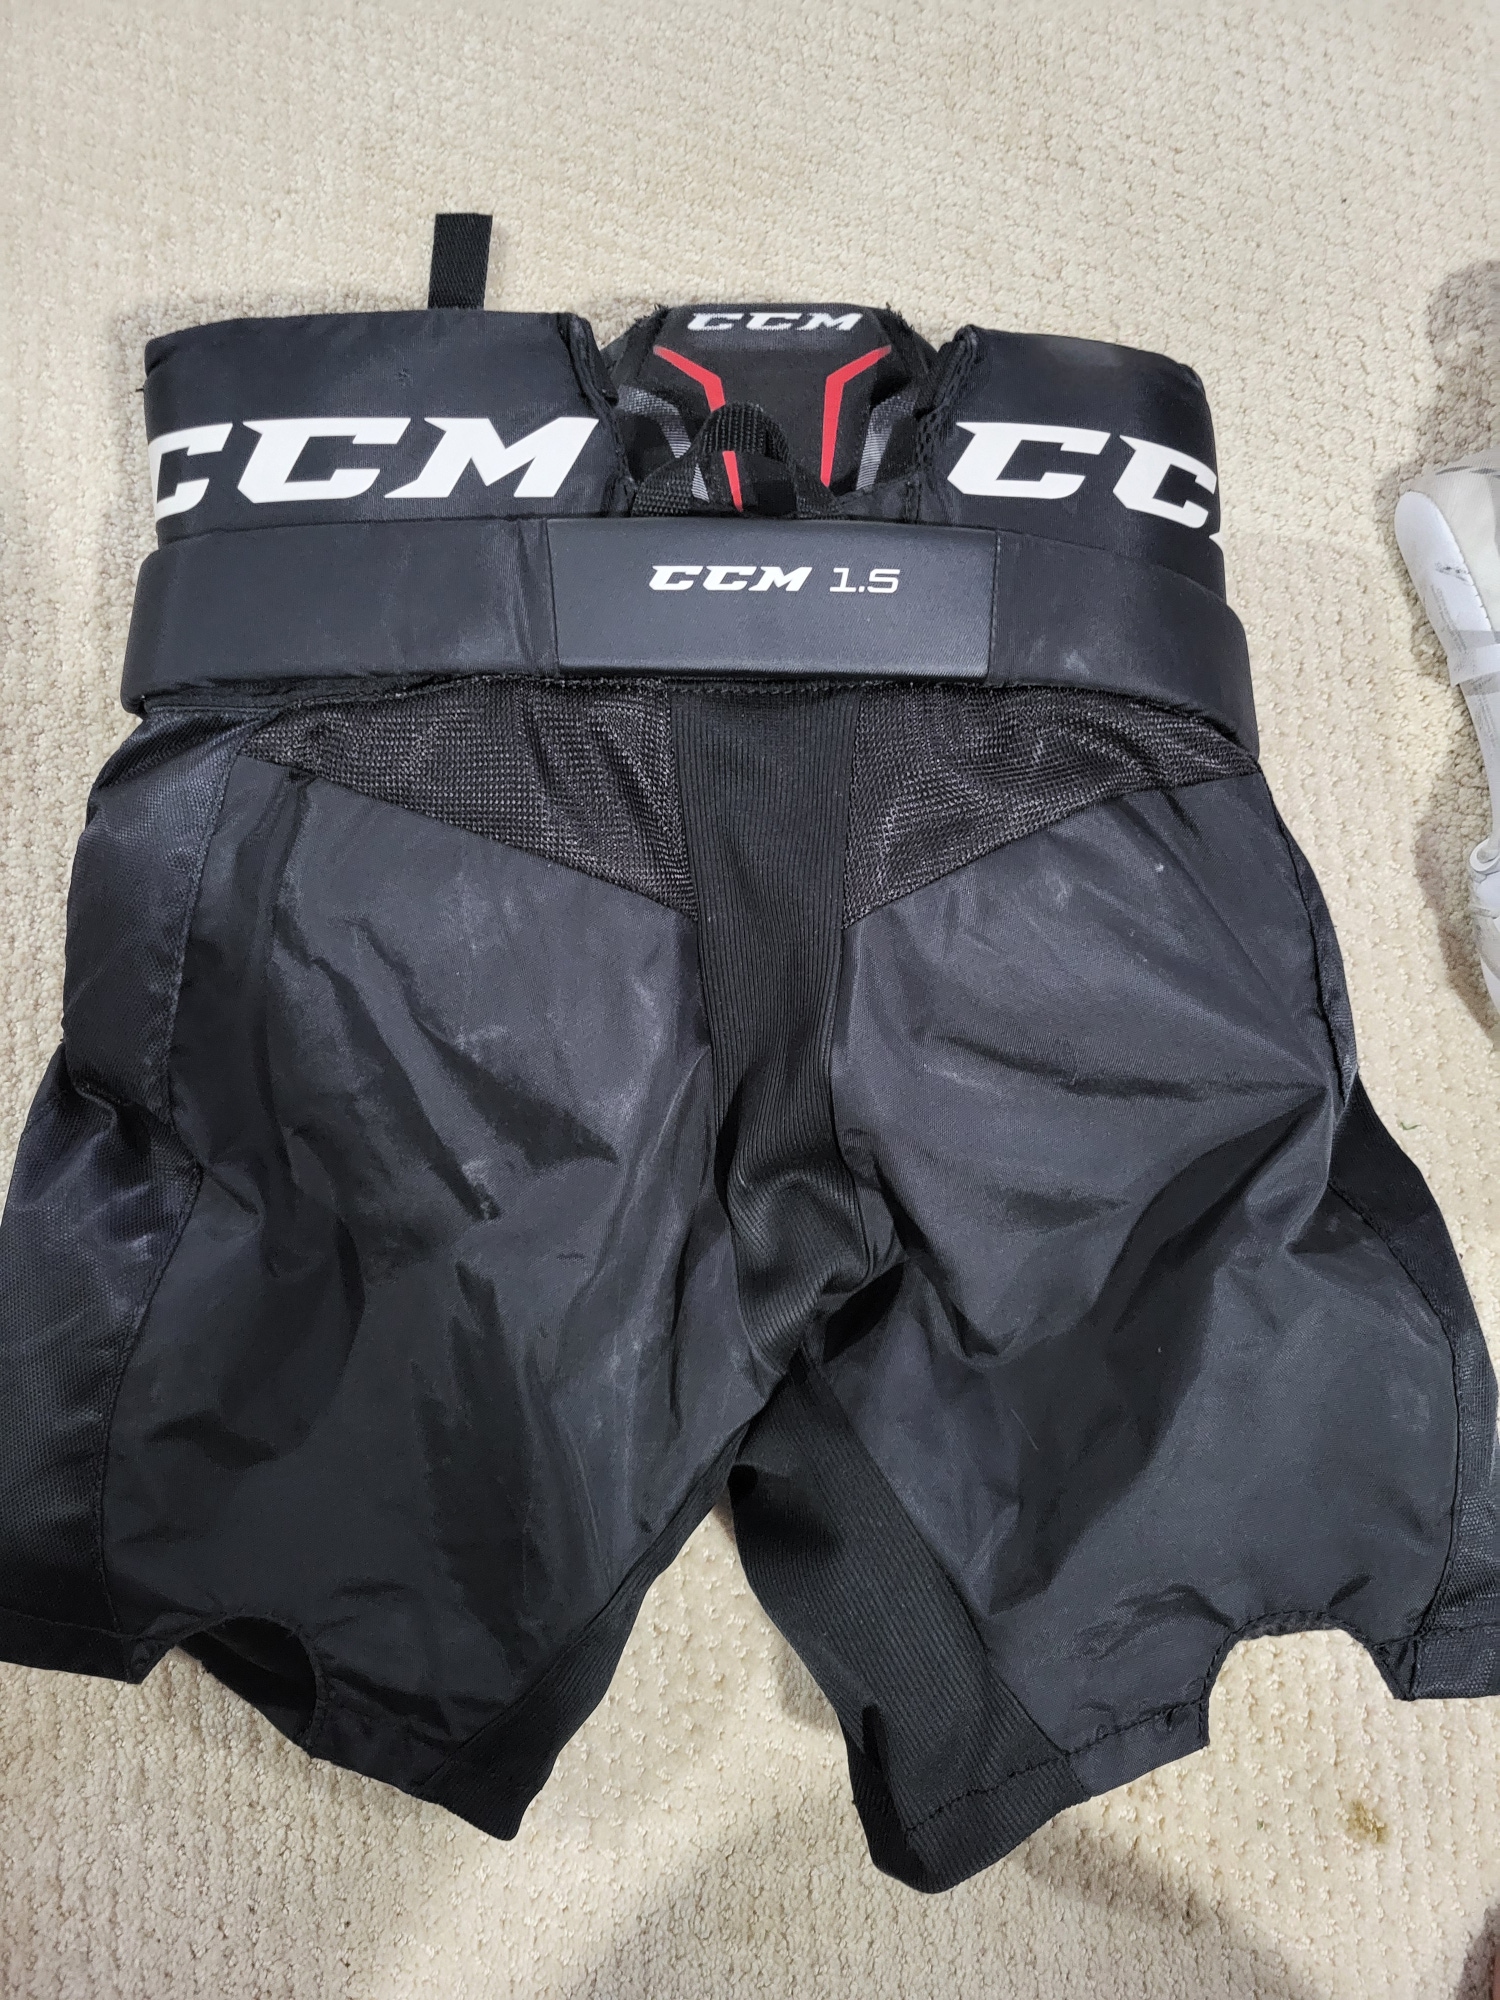 Used Medium CCM 1.5 Goalie Pants